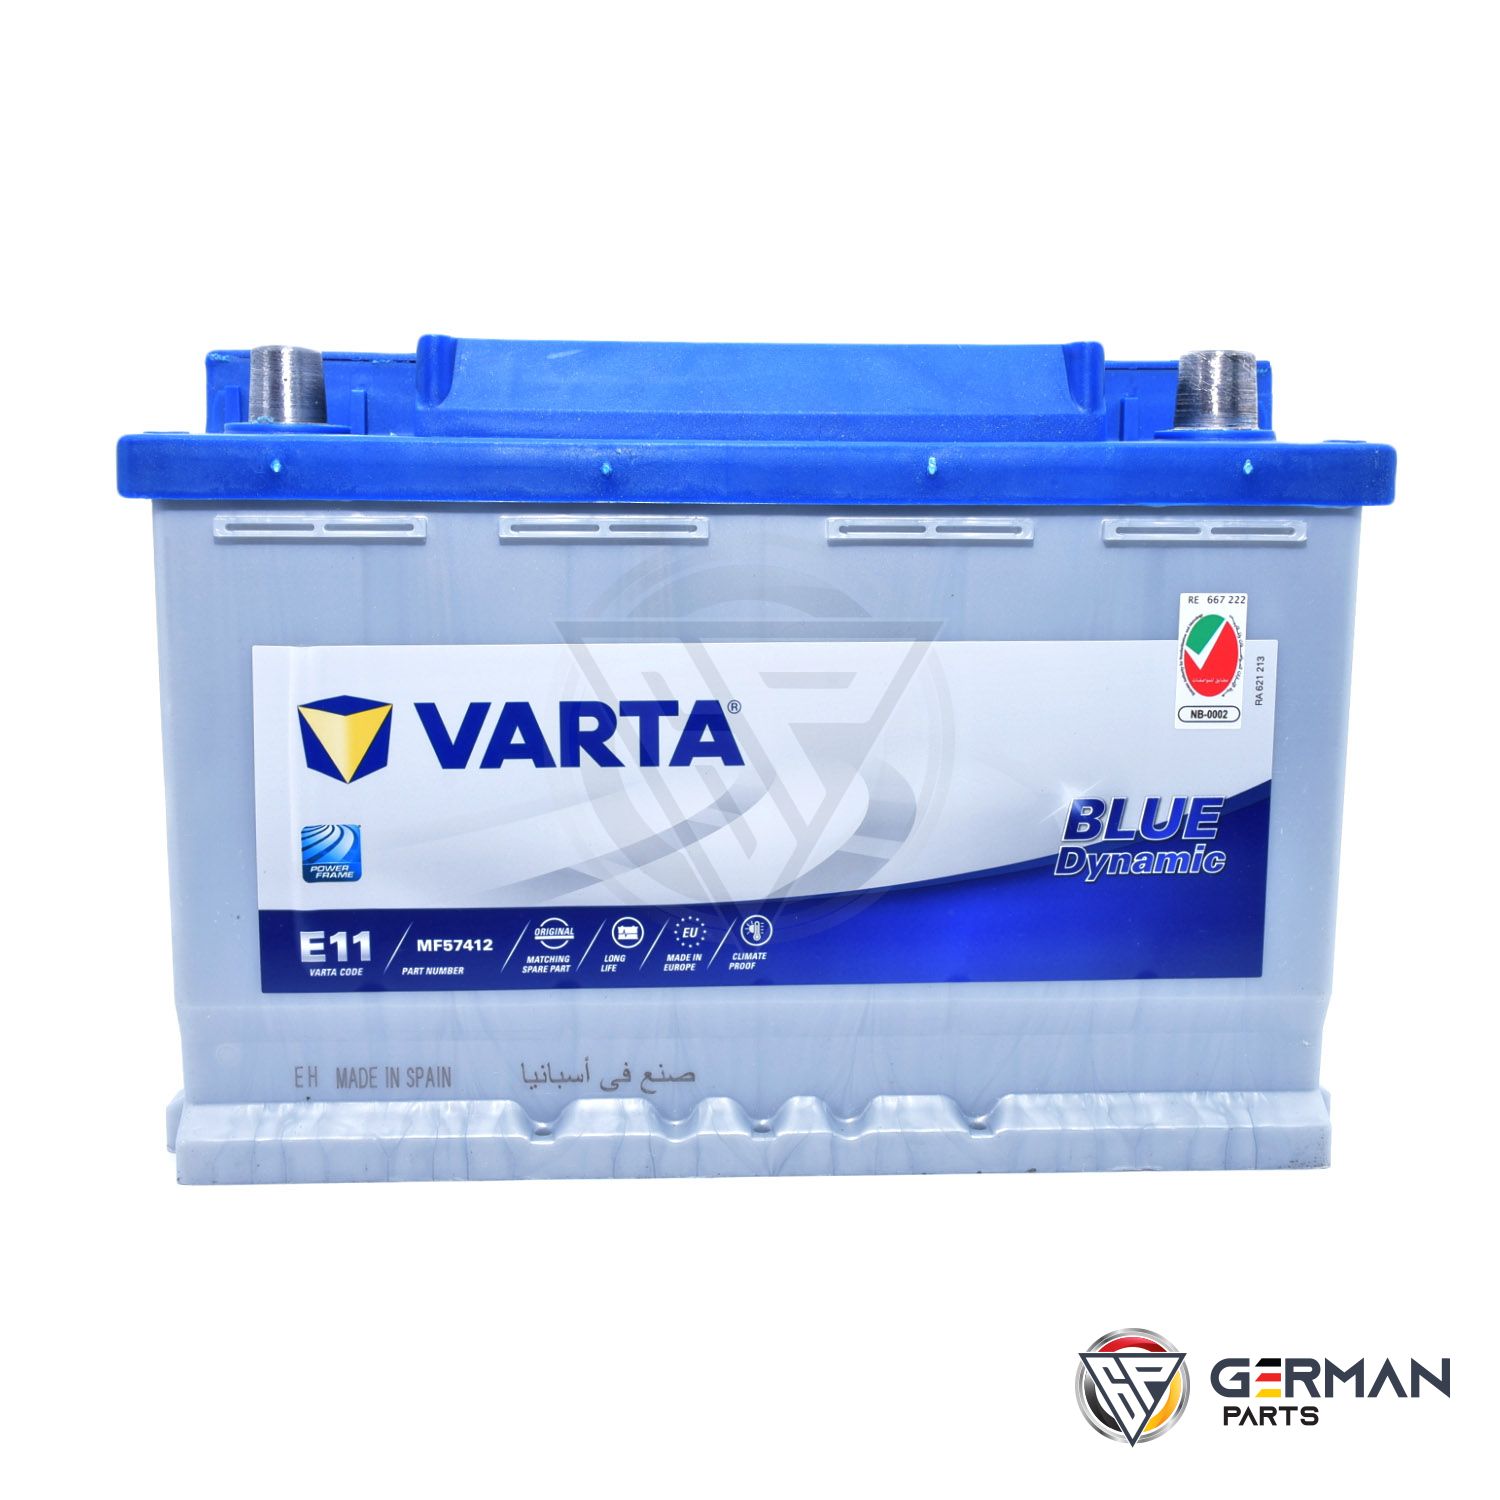 Buy Varta Battery 74 Ah DIN747MFV-E11 - German Parts